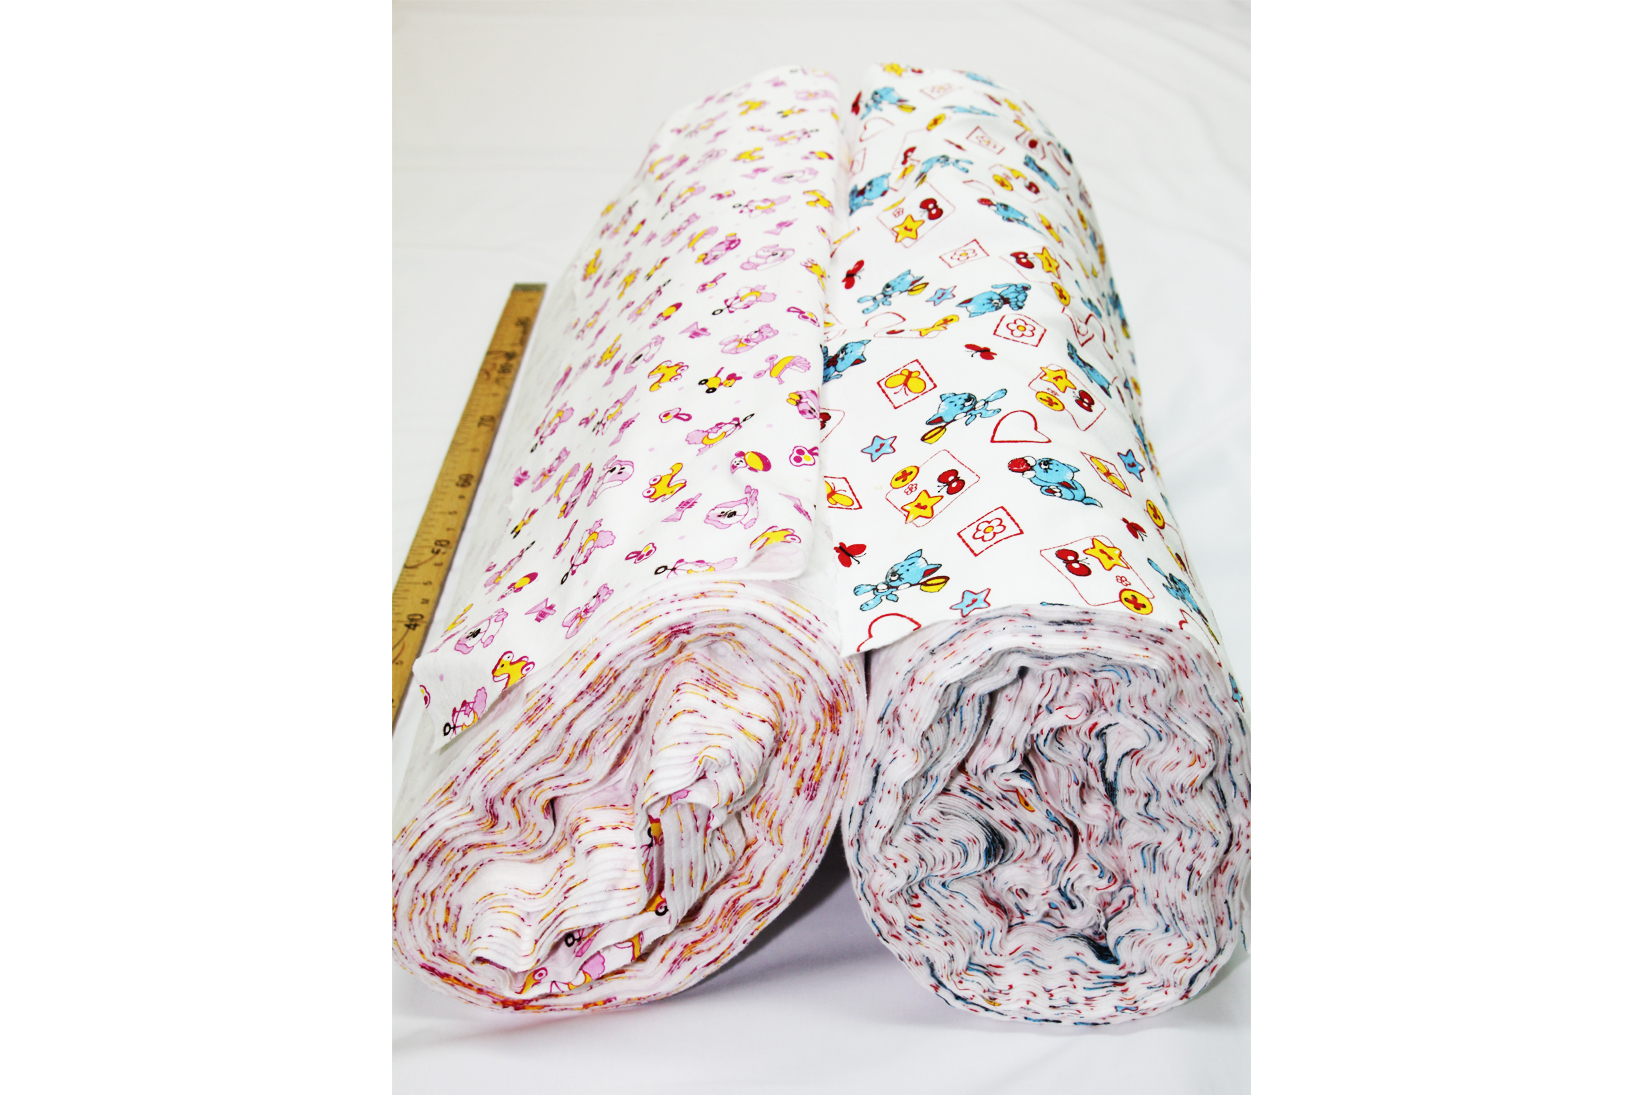 Купить рулон постельной ткани. Рулон ткани. Ситец в рулонах. Рулоны ткани для постельного. Ткань ситец в рулонах.